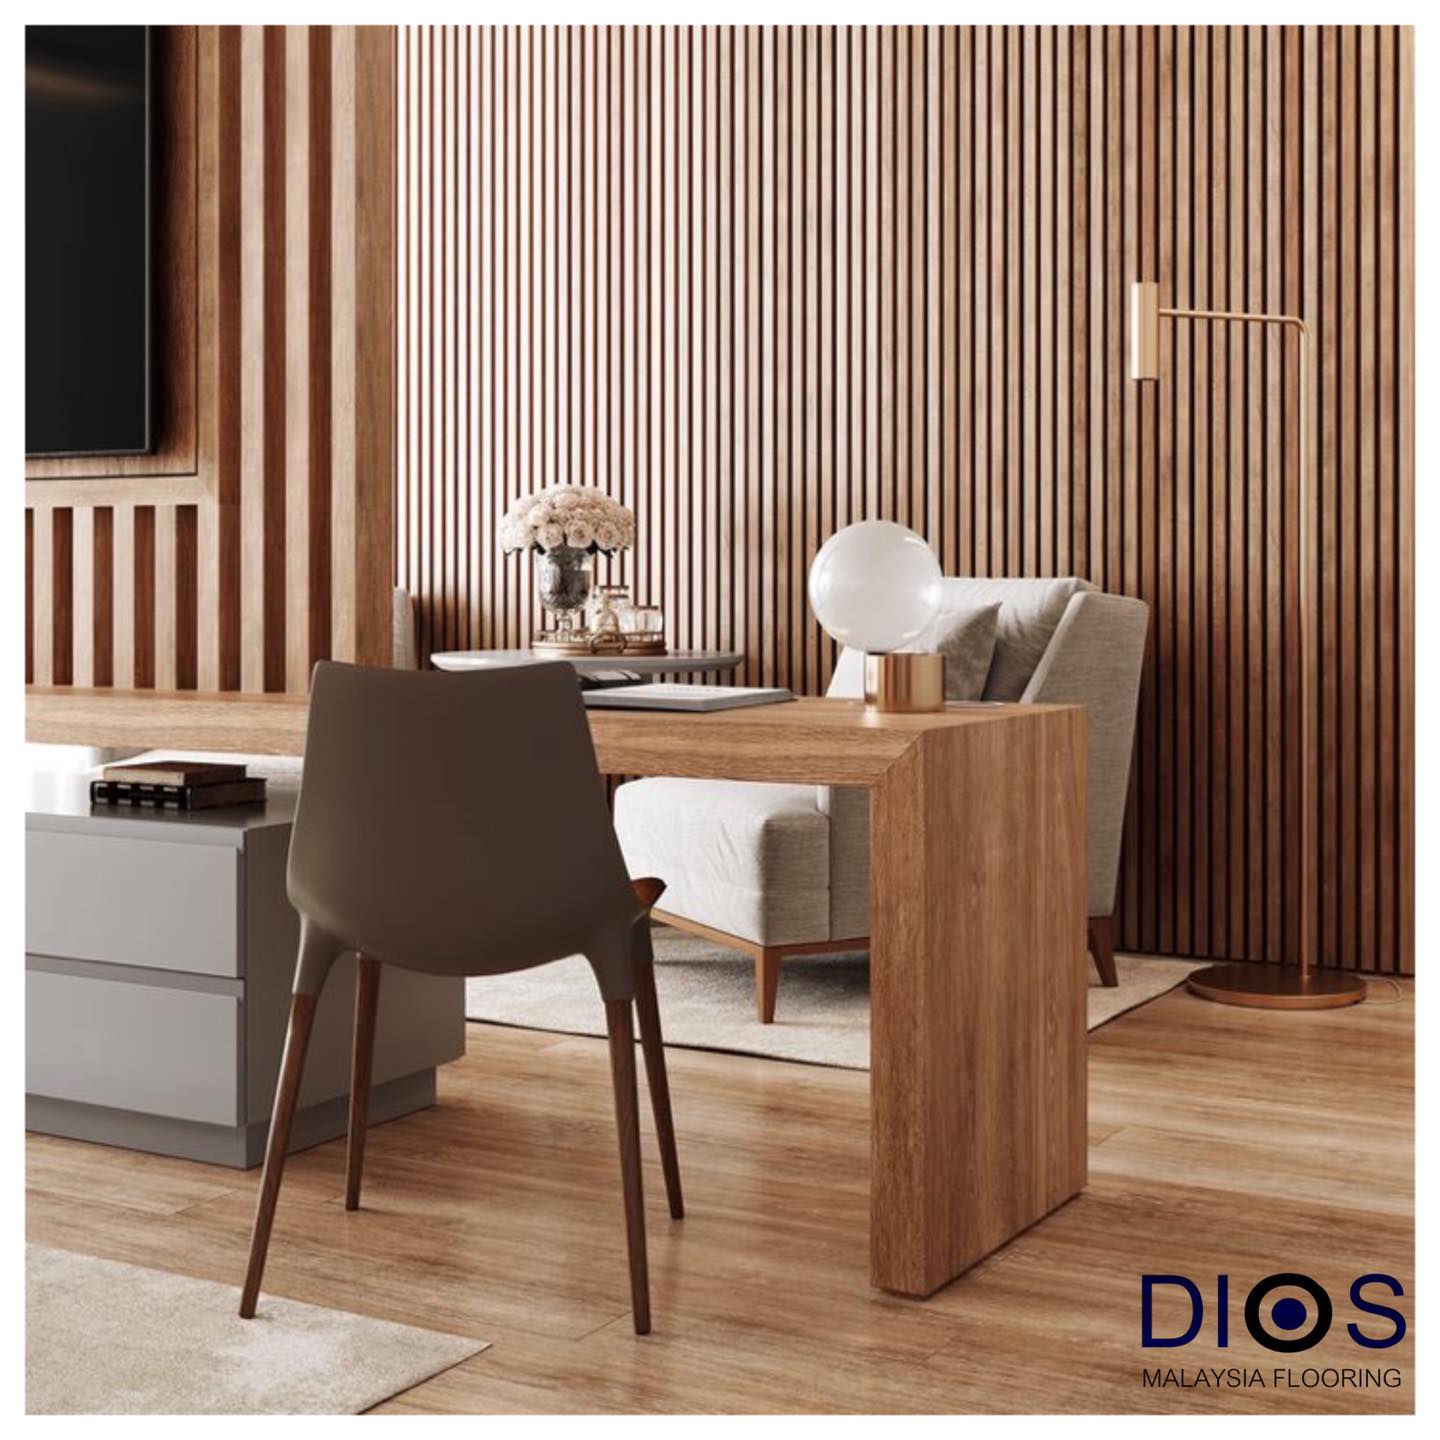 Sàn gỗ DIOS nâng tầm không gian sống đẳng cấp, sang trọng.